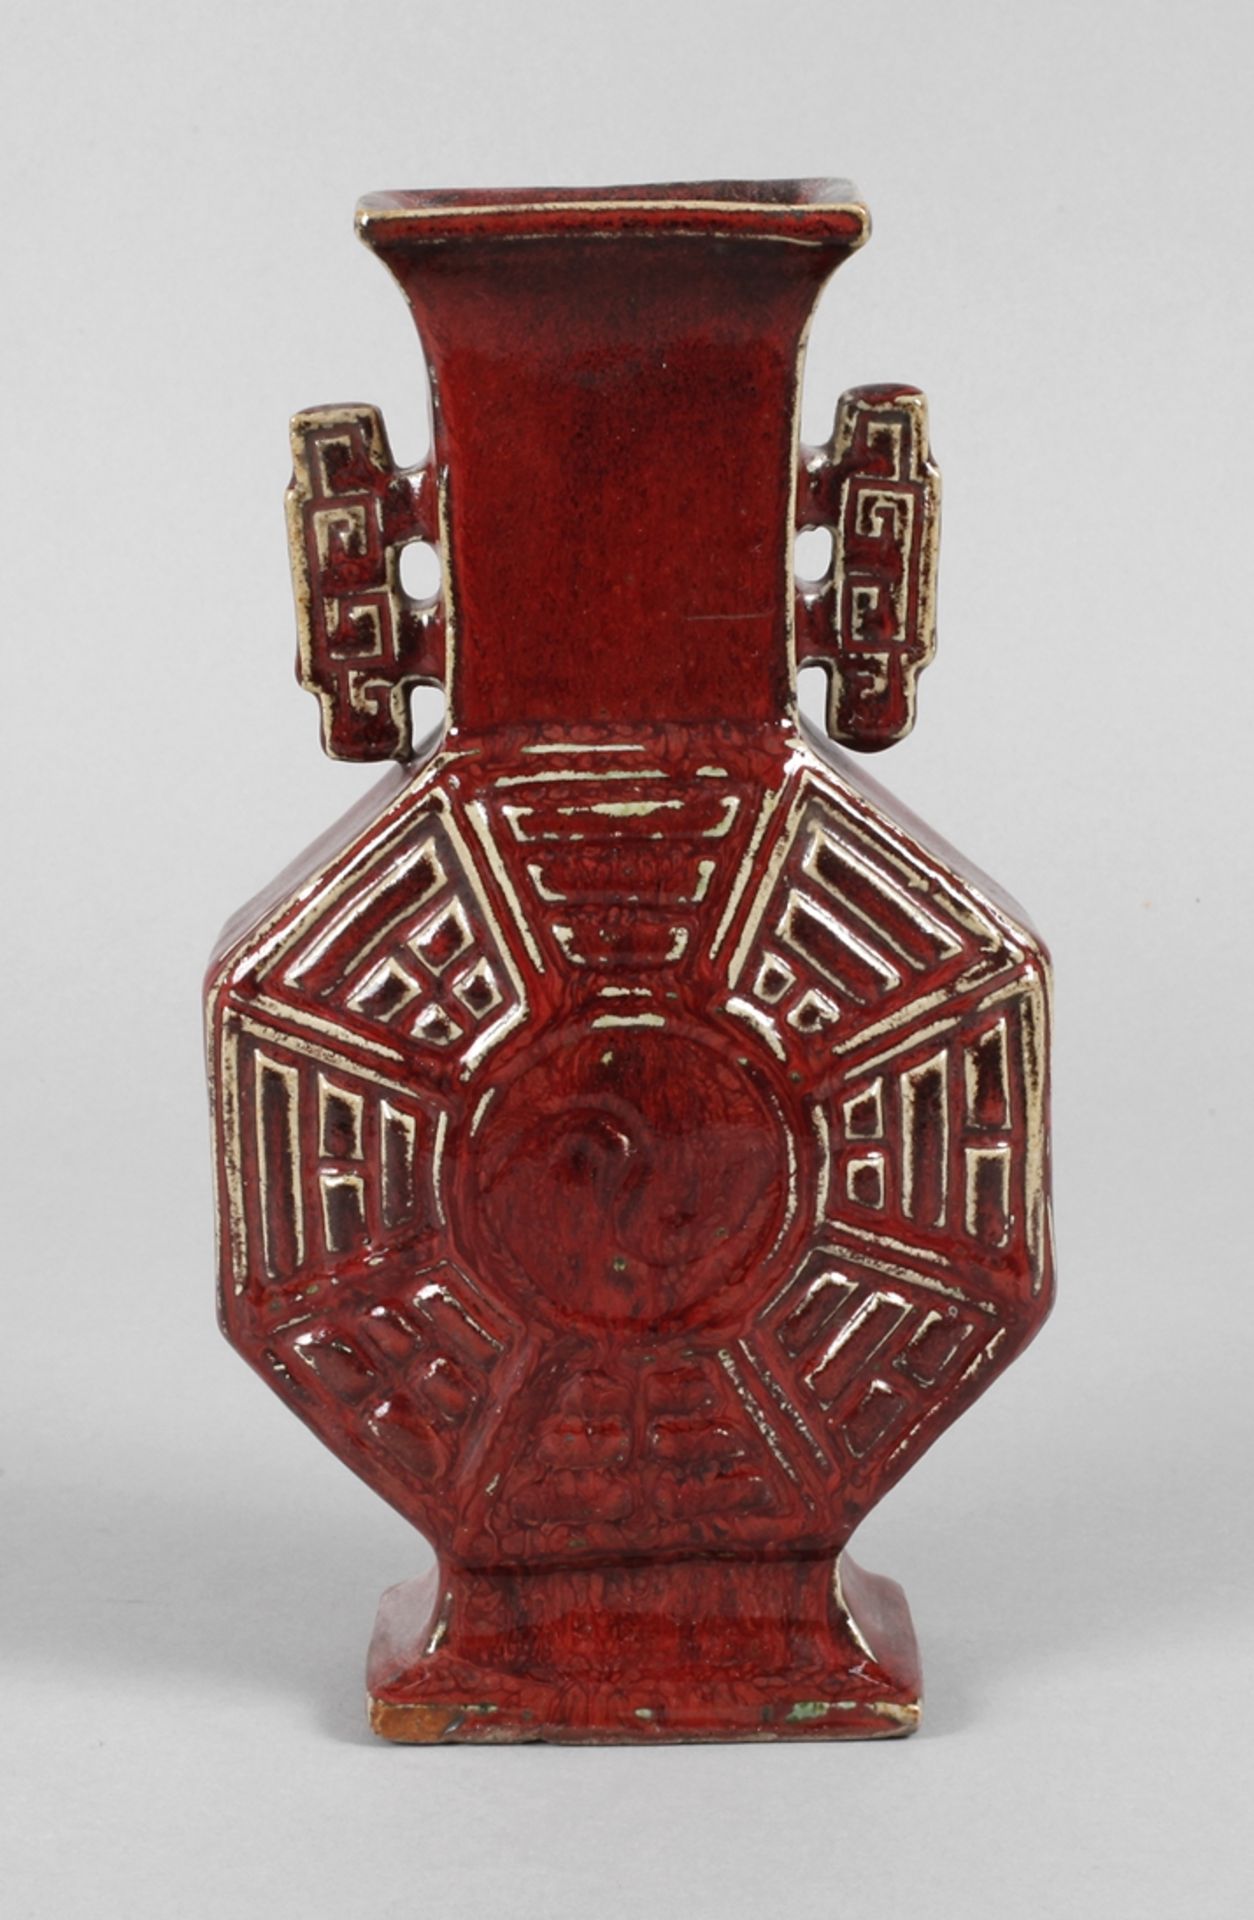 Vase Chinaum 1900, ungemarkt, bräunlicher Scherben in ochsenblutfarbener Laufglasur, flacher